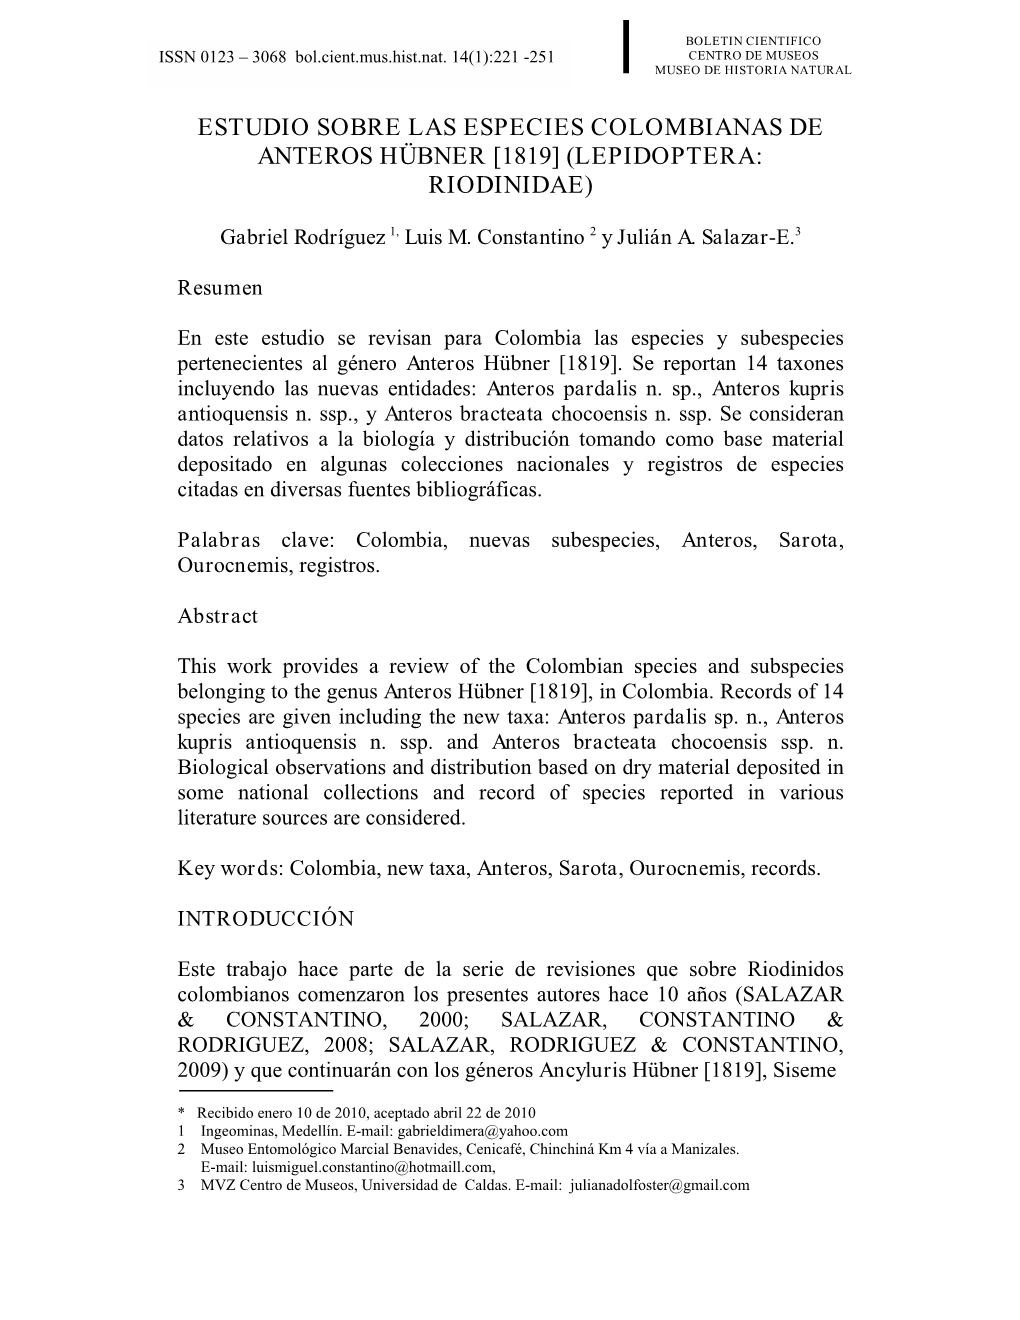 Estudio Sobre Las Especies Colombianas De Anteros Hübner [1819] (Lepidoptera: Riodinidae)